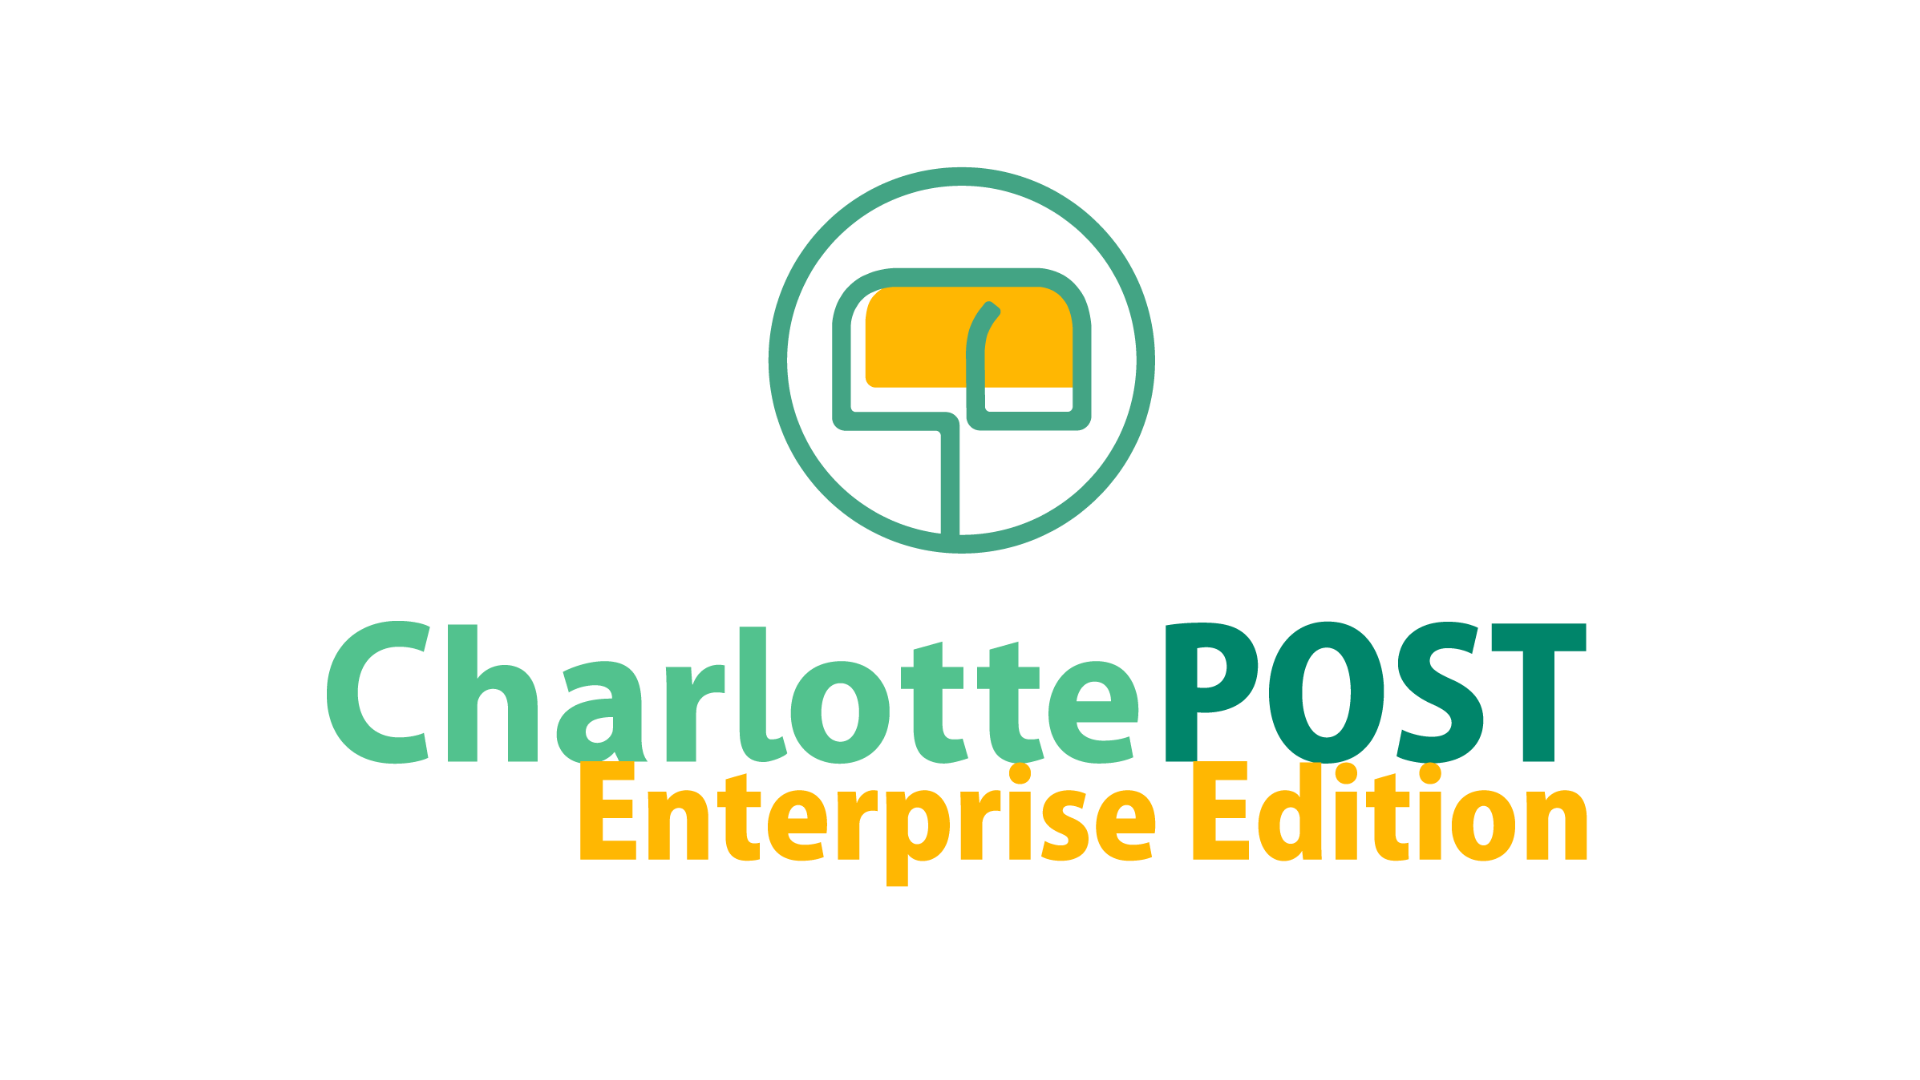 社会保険の電子申請を支援するソリューション「Charlotte」で従業員とのコミュニケーションサービス「Charlotte POST EE」を提供開始